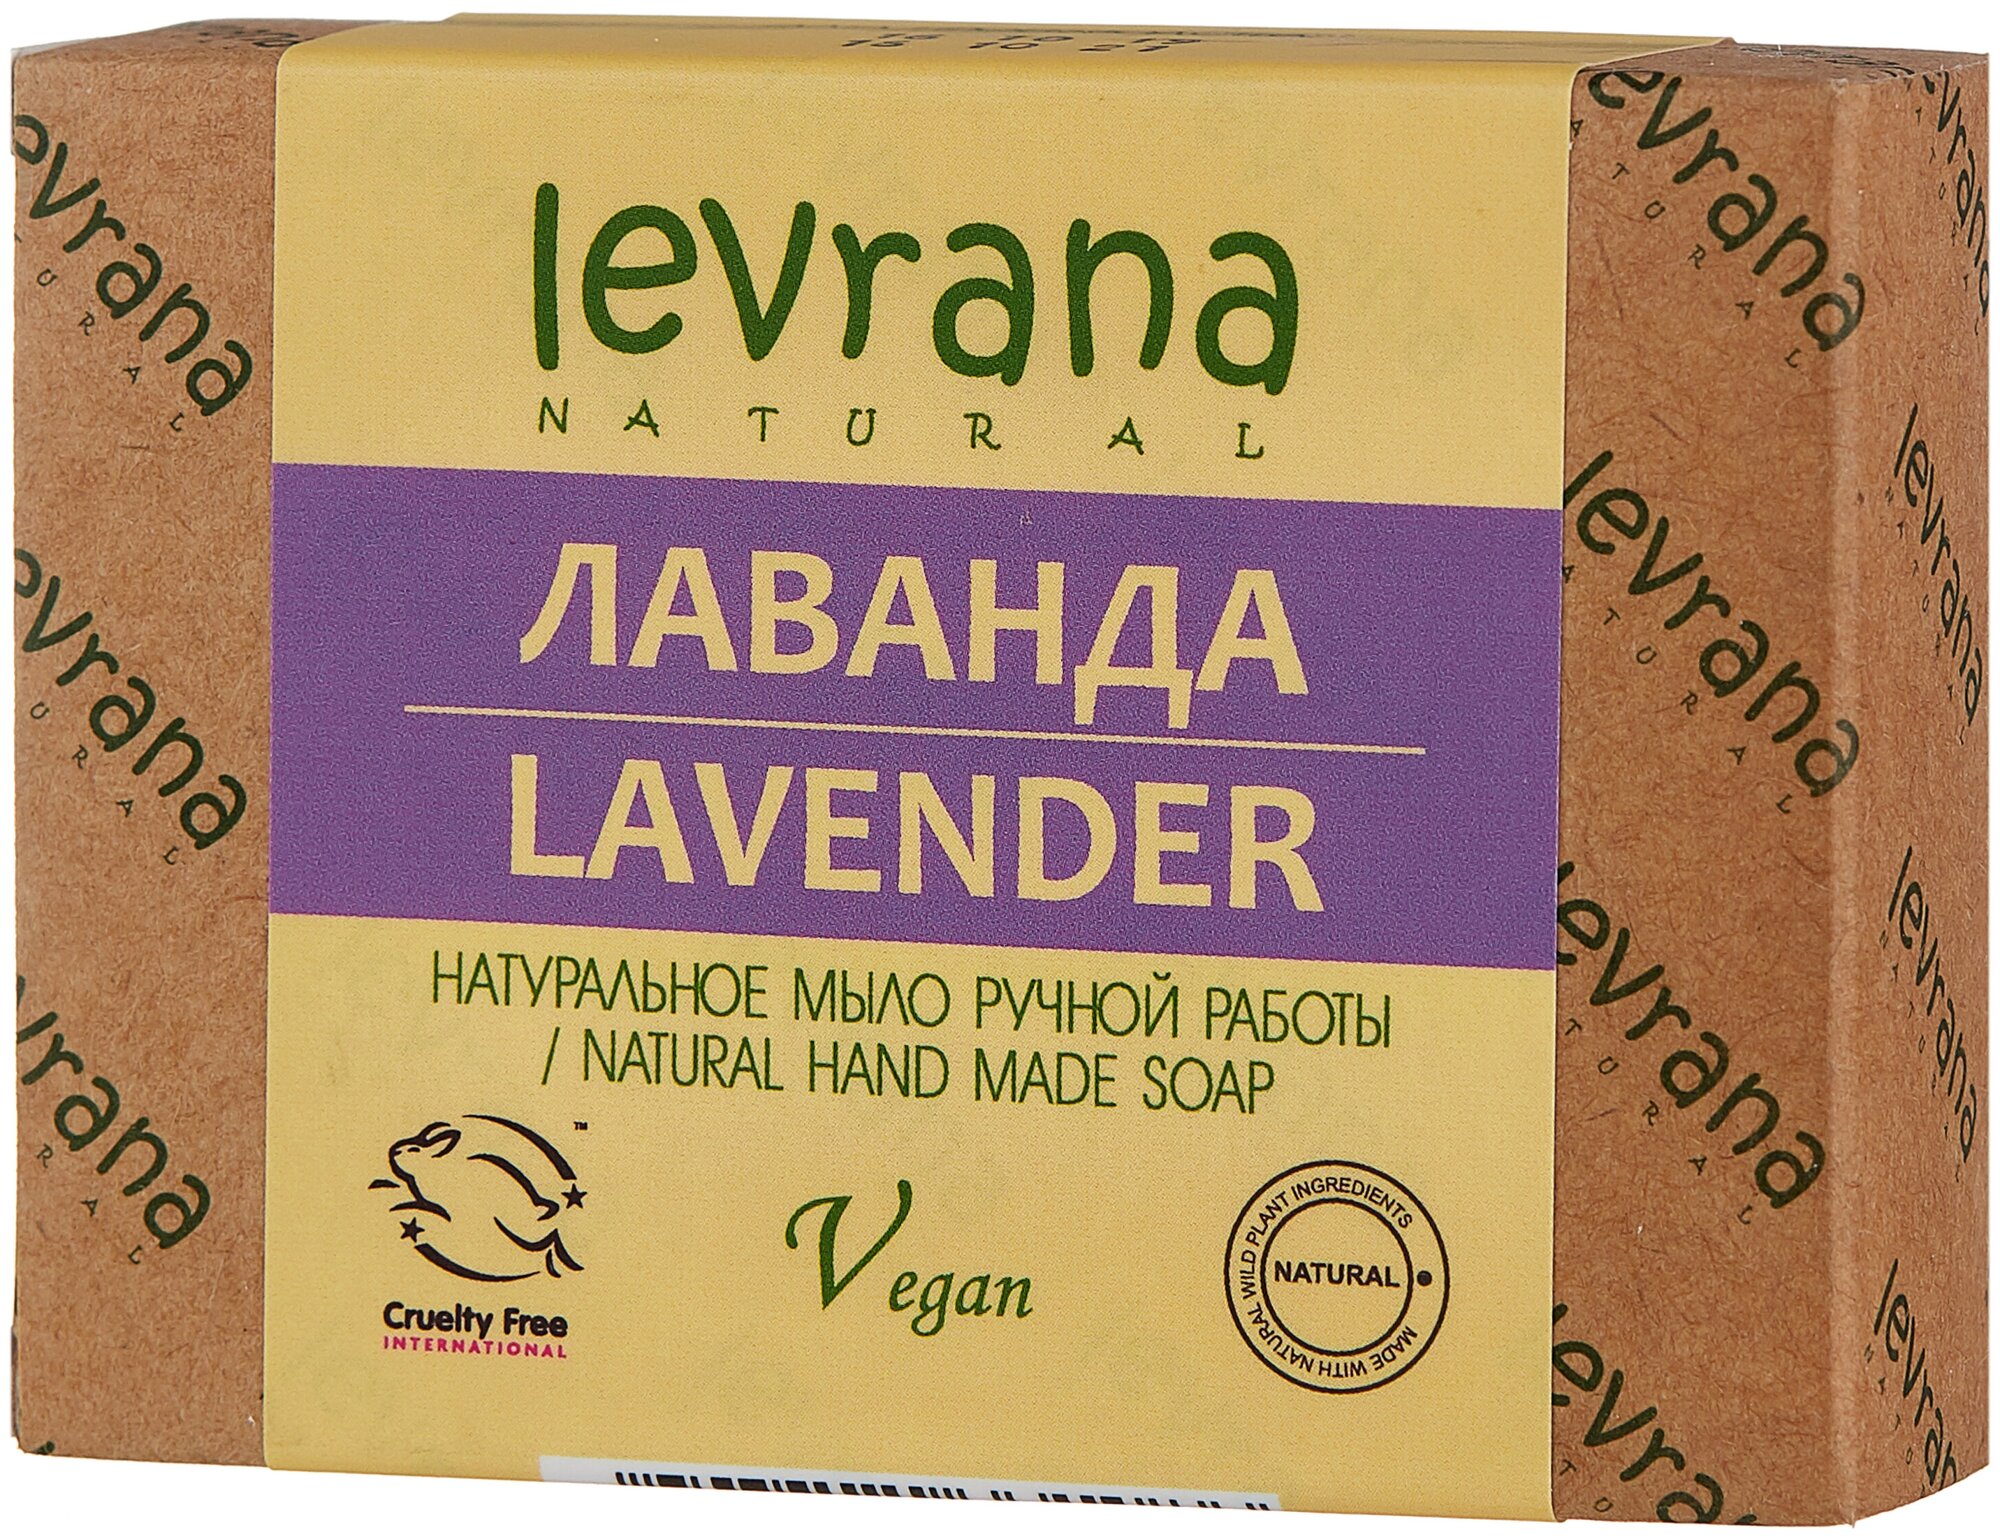 Натуральное мыло ручной работы Лаванда, Levrana, 100гр